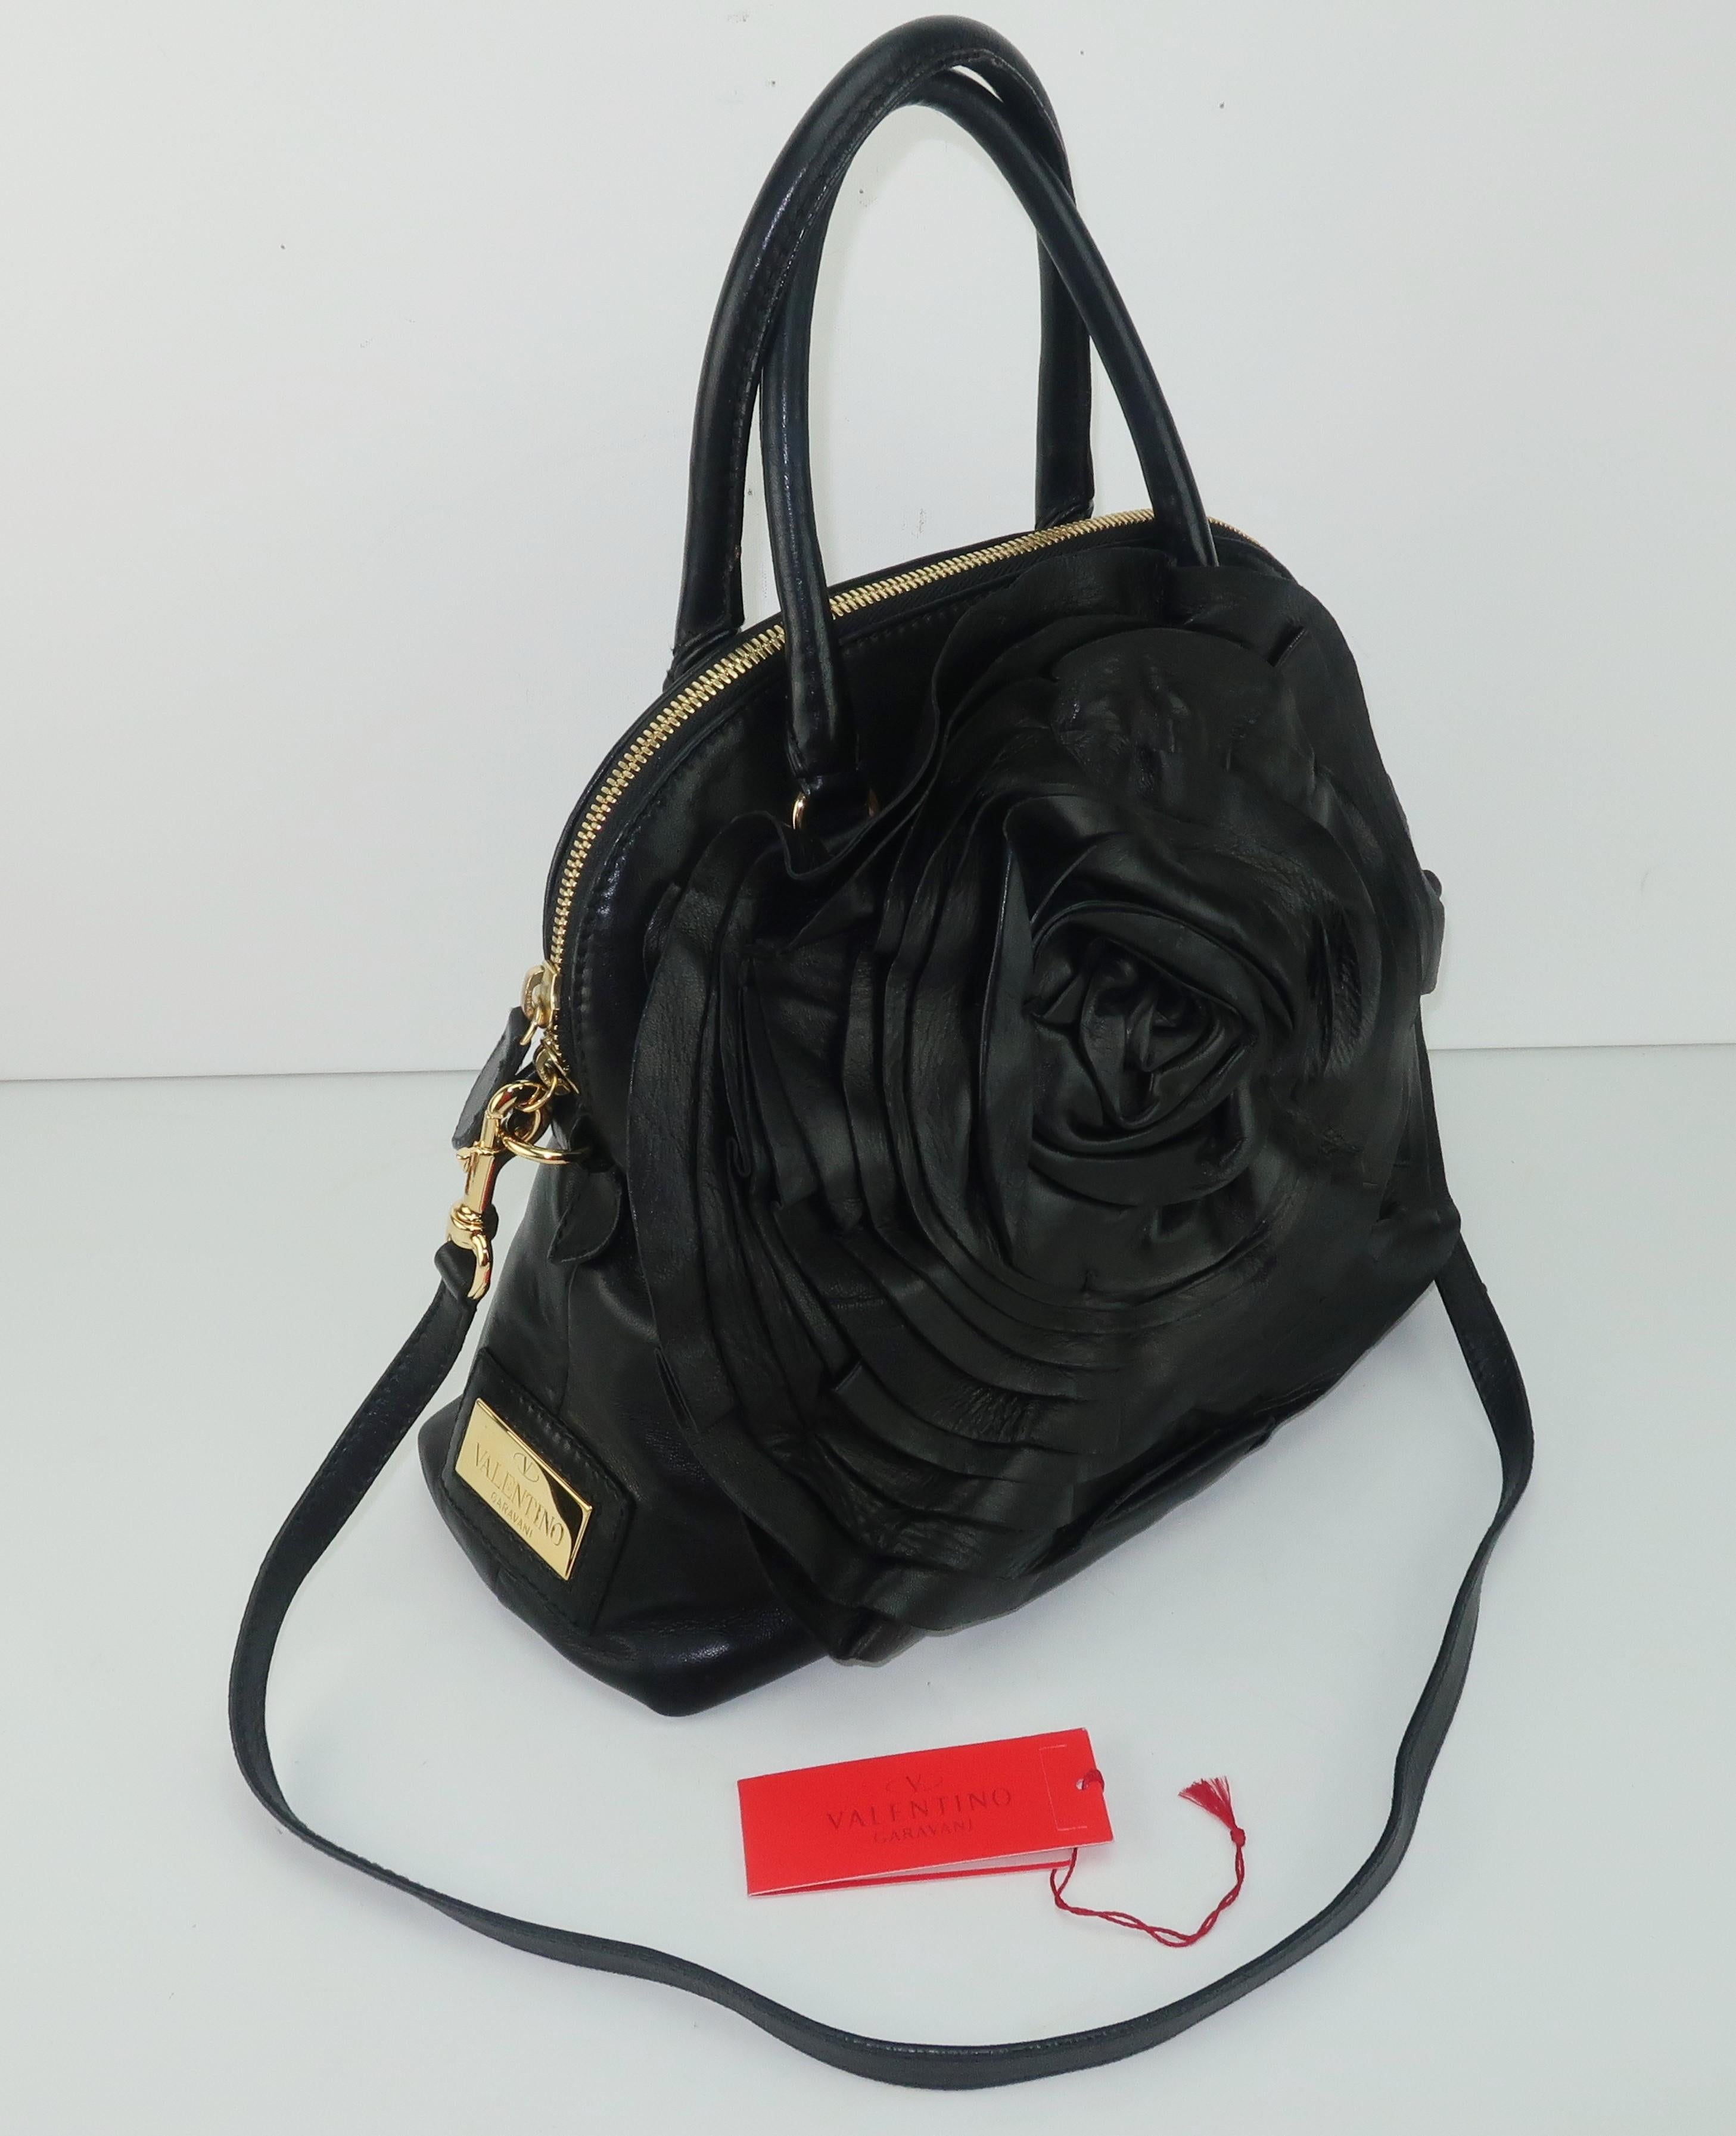 Valentino Garavani Black Leather Petale Dome Handbag 6